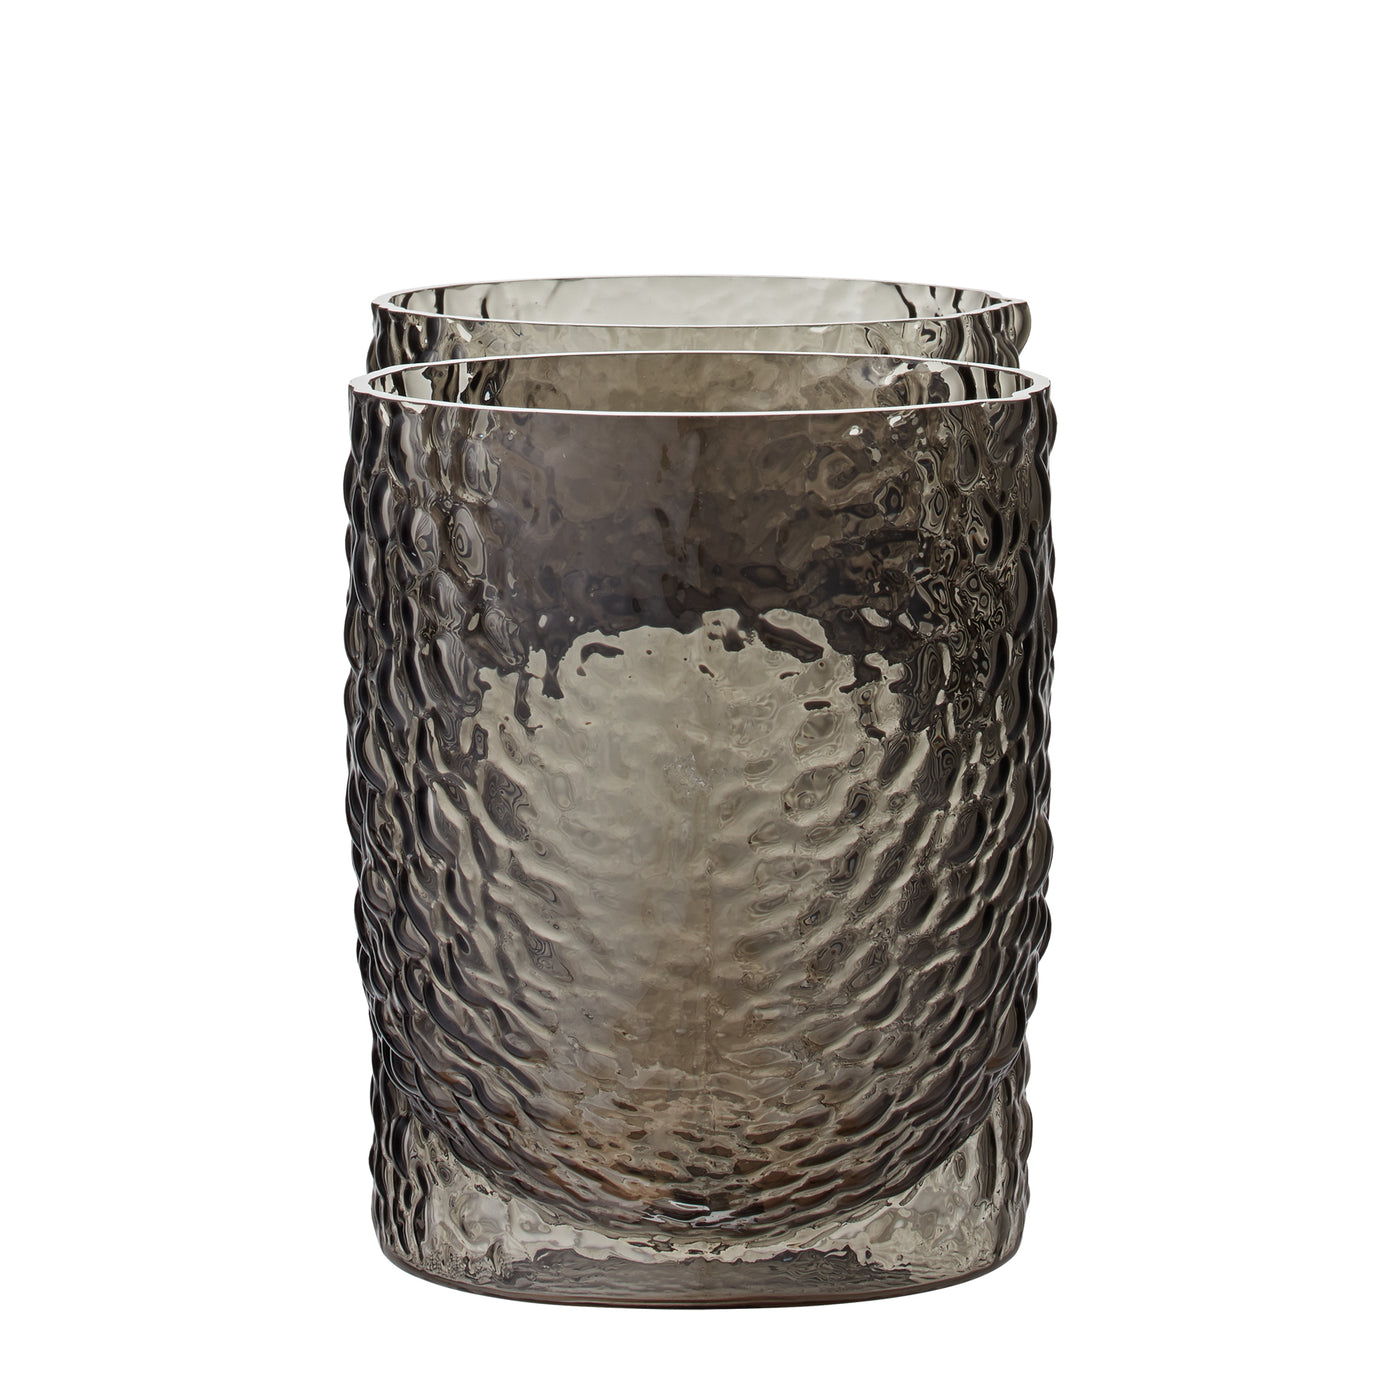 Designová skleněná váza, Originální váza od AYTM aurora, AURORA vase, luxusní váza do interiéru, romein concept store, váza